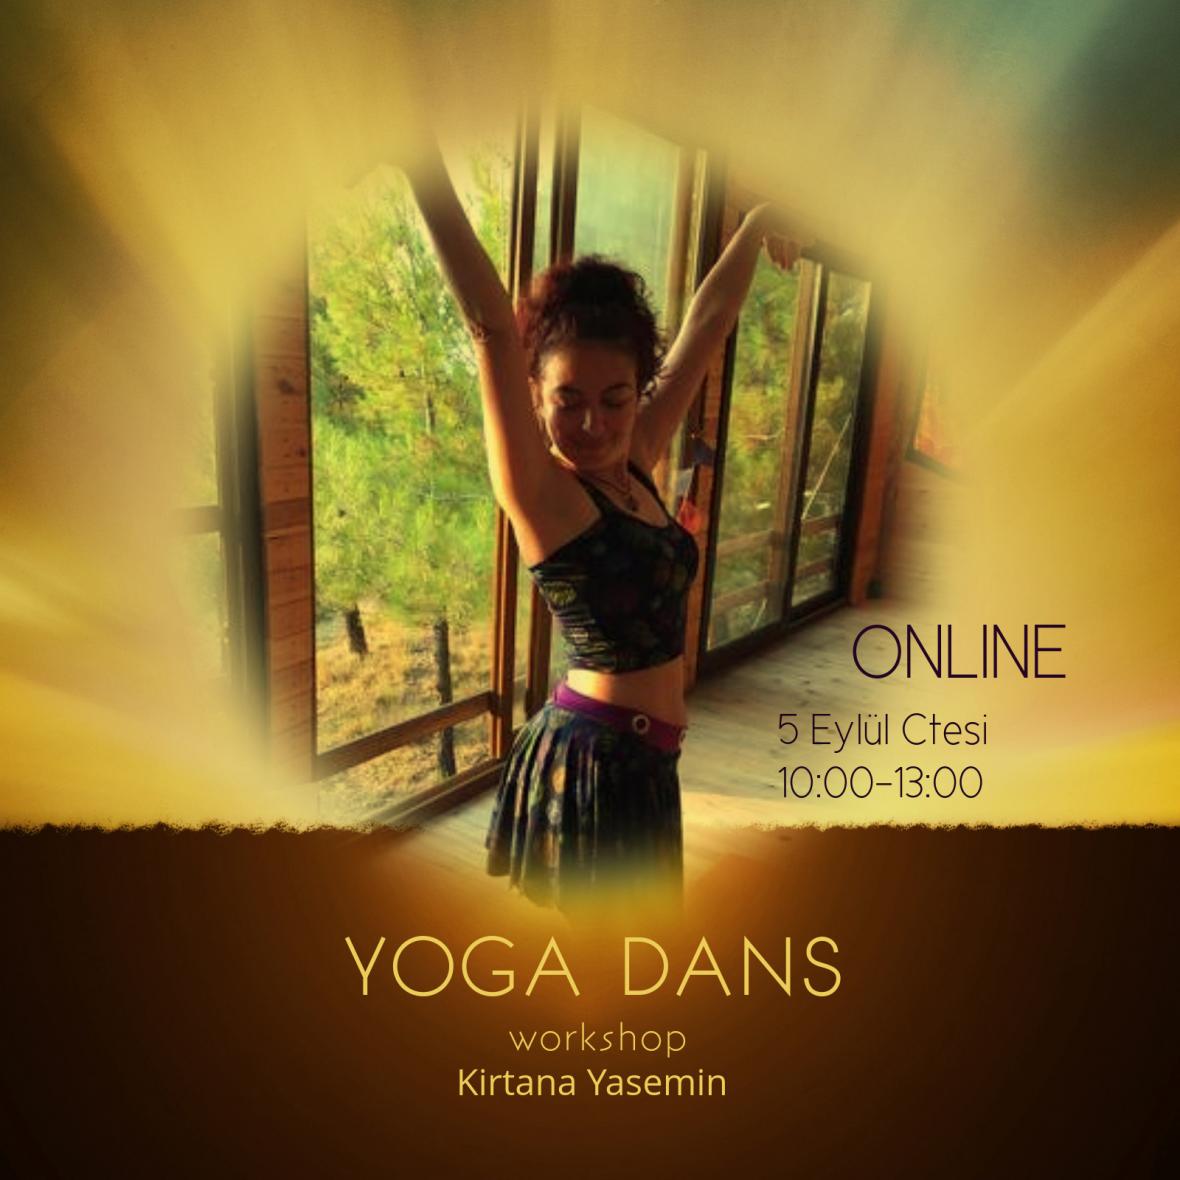 YogaDans Online Workshop